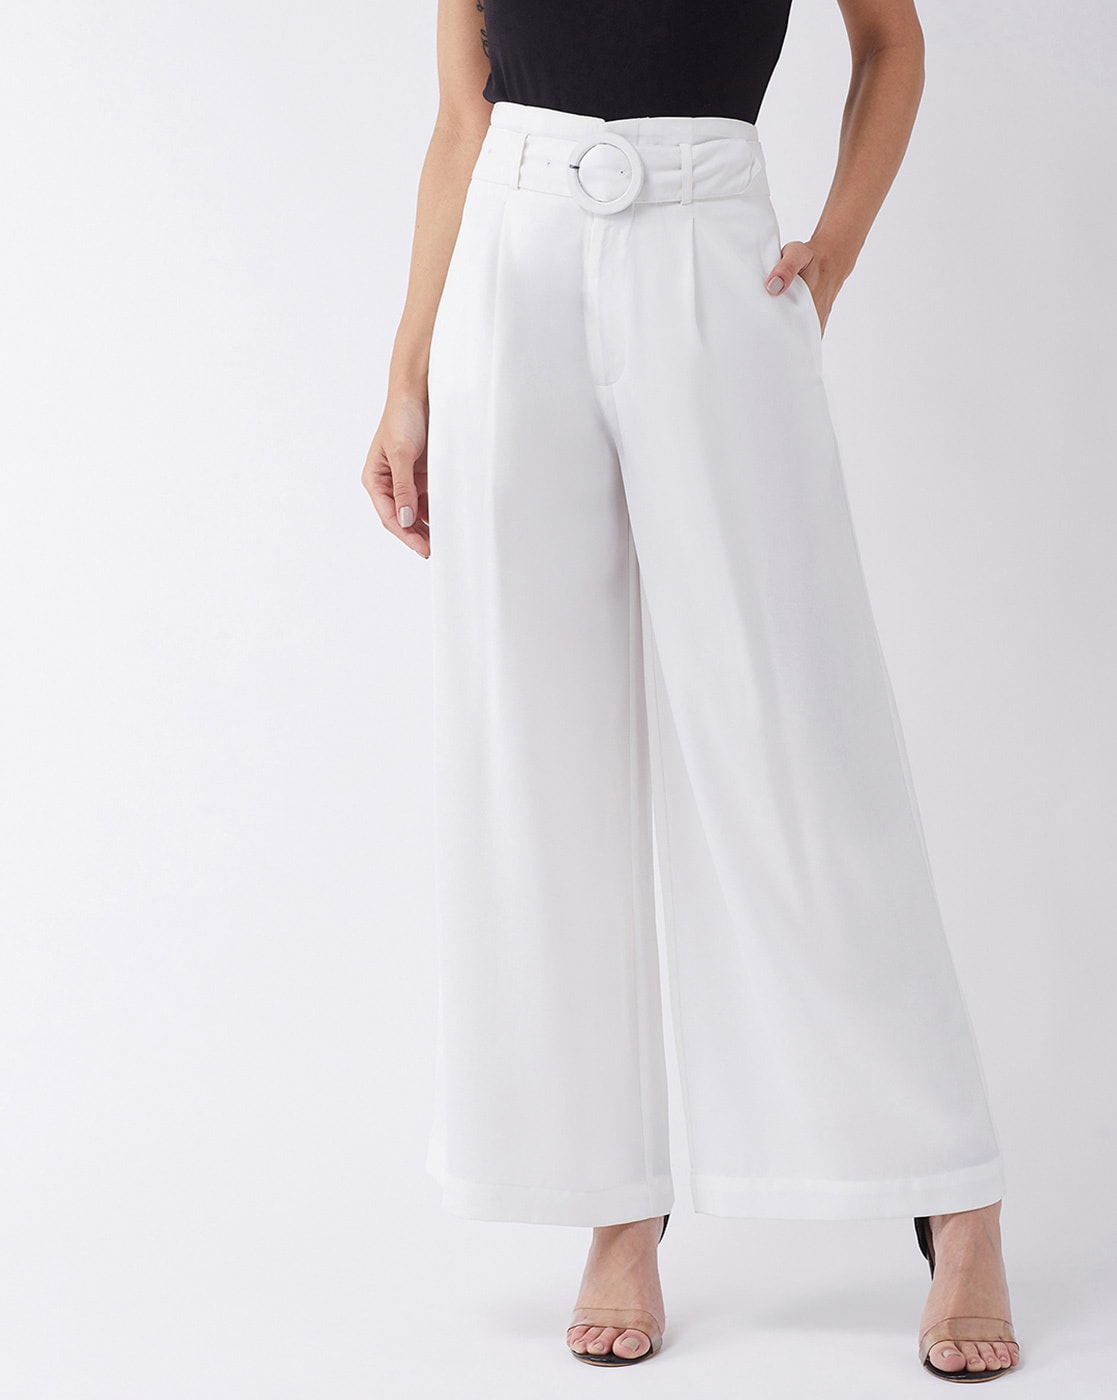 Buy White Pants For Women Online in India | VeroModa-saigonsouth.com.vn